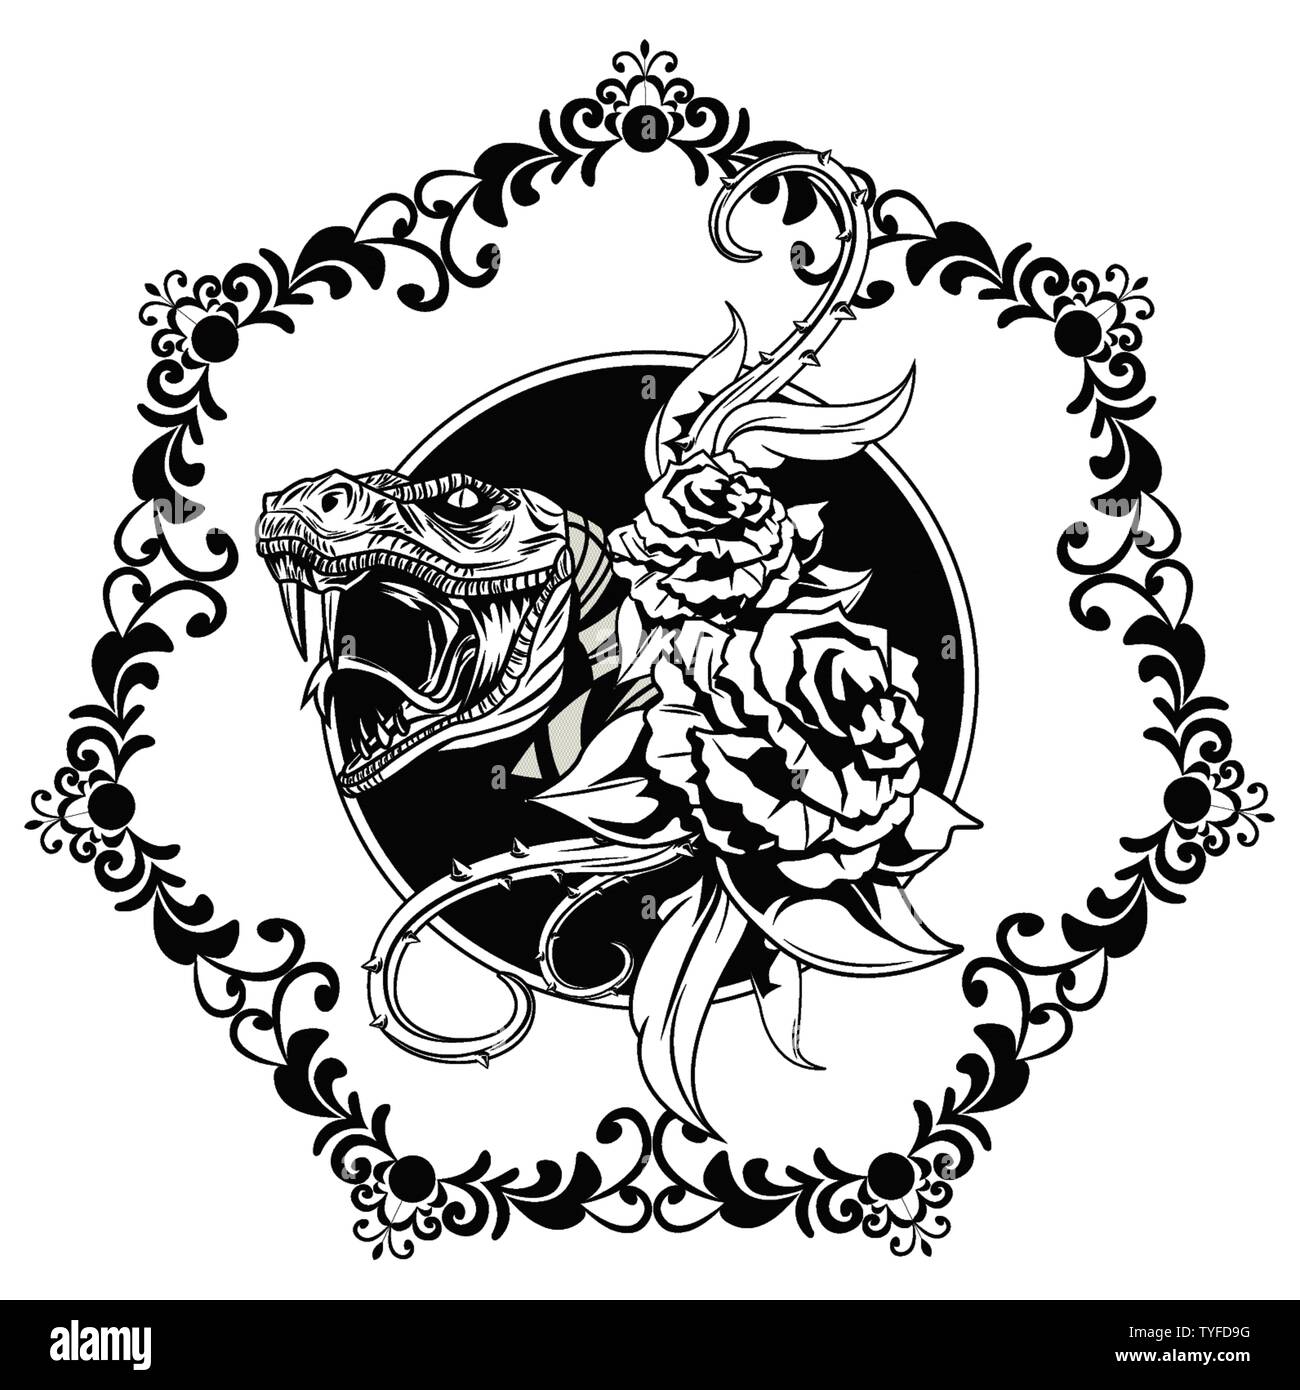 Schlange mit Rosen gezeichnet tattoo Symbol Stock-Vektorgrafik - Alamy